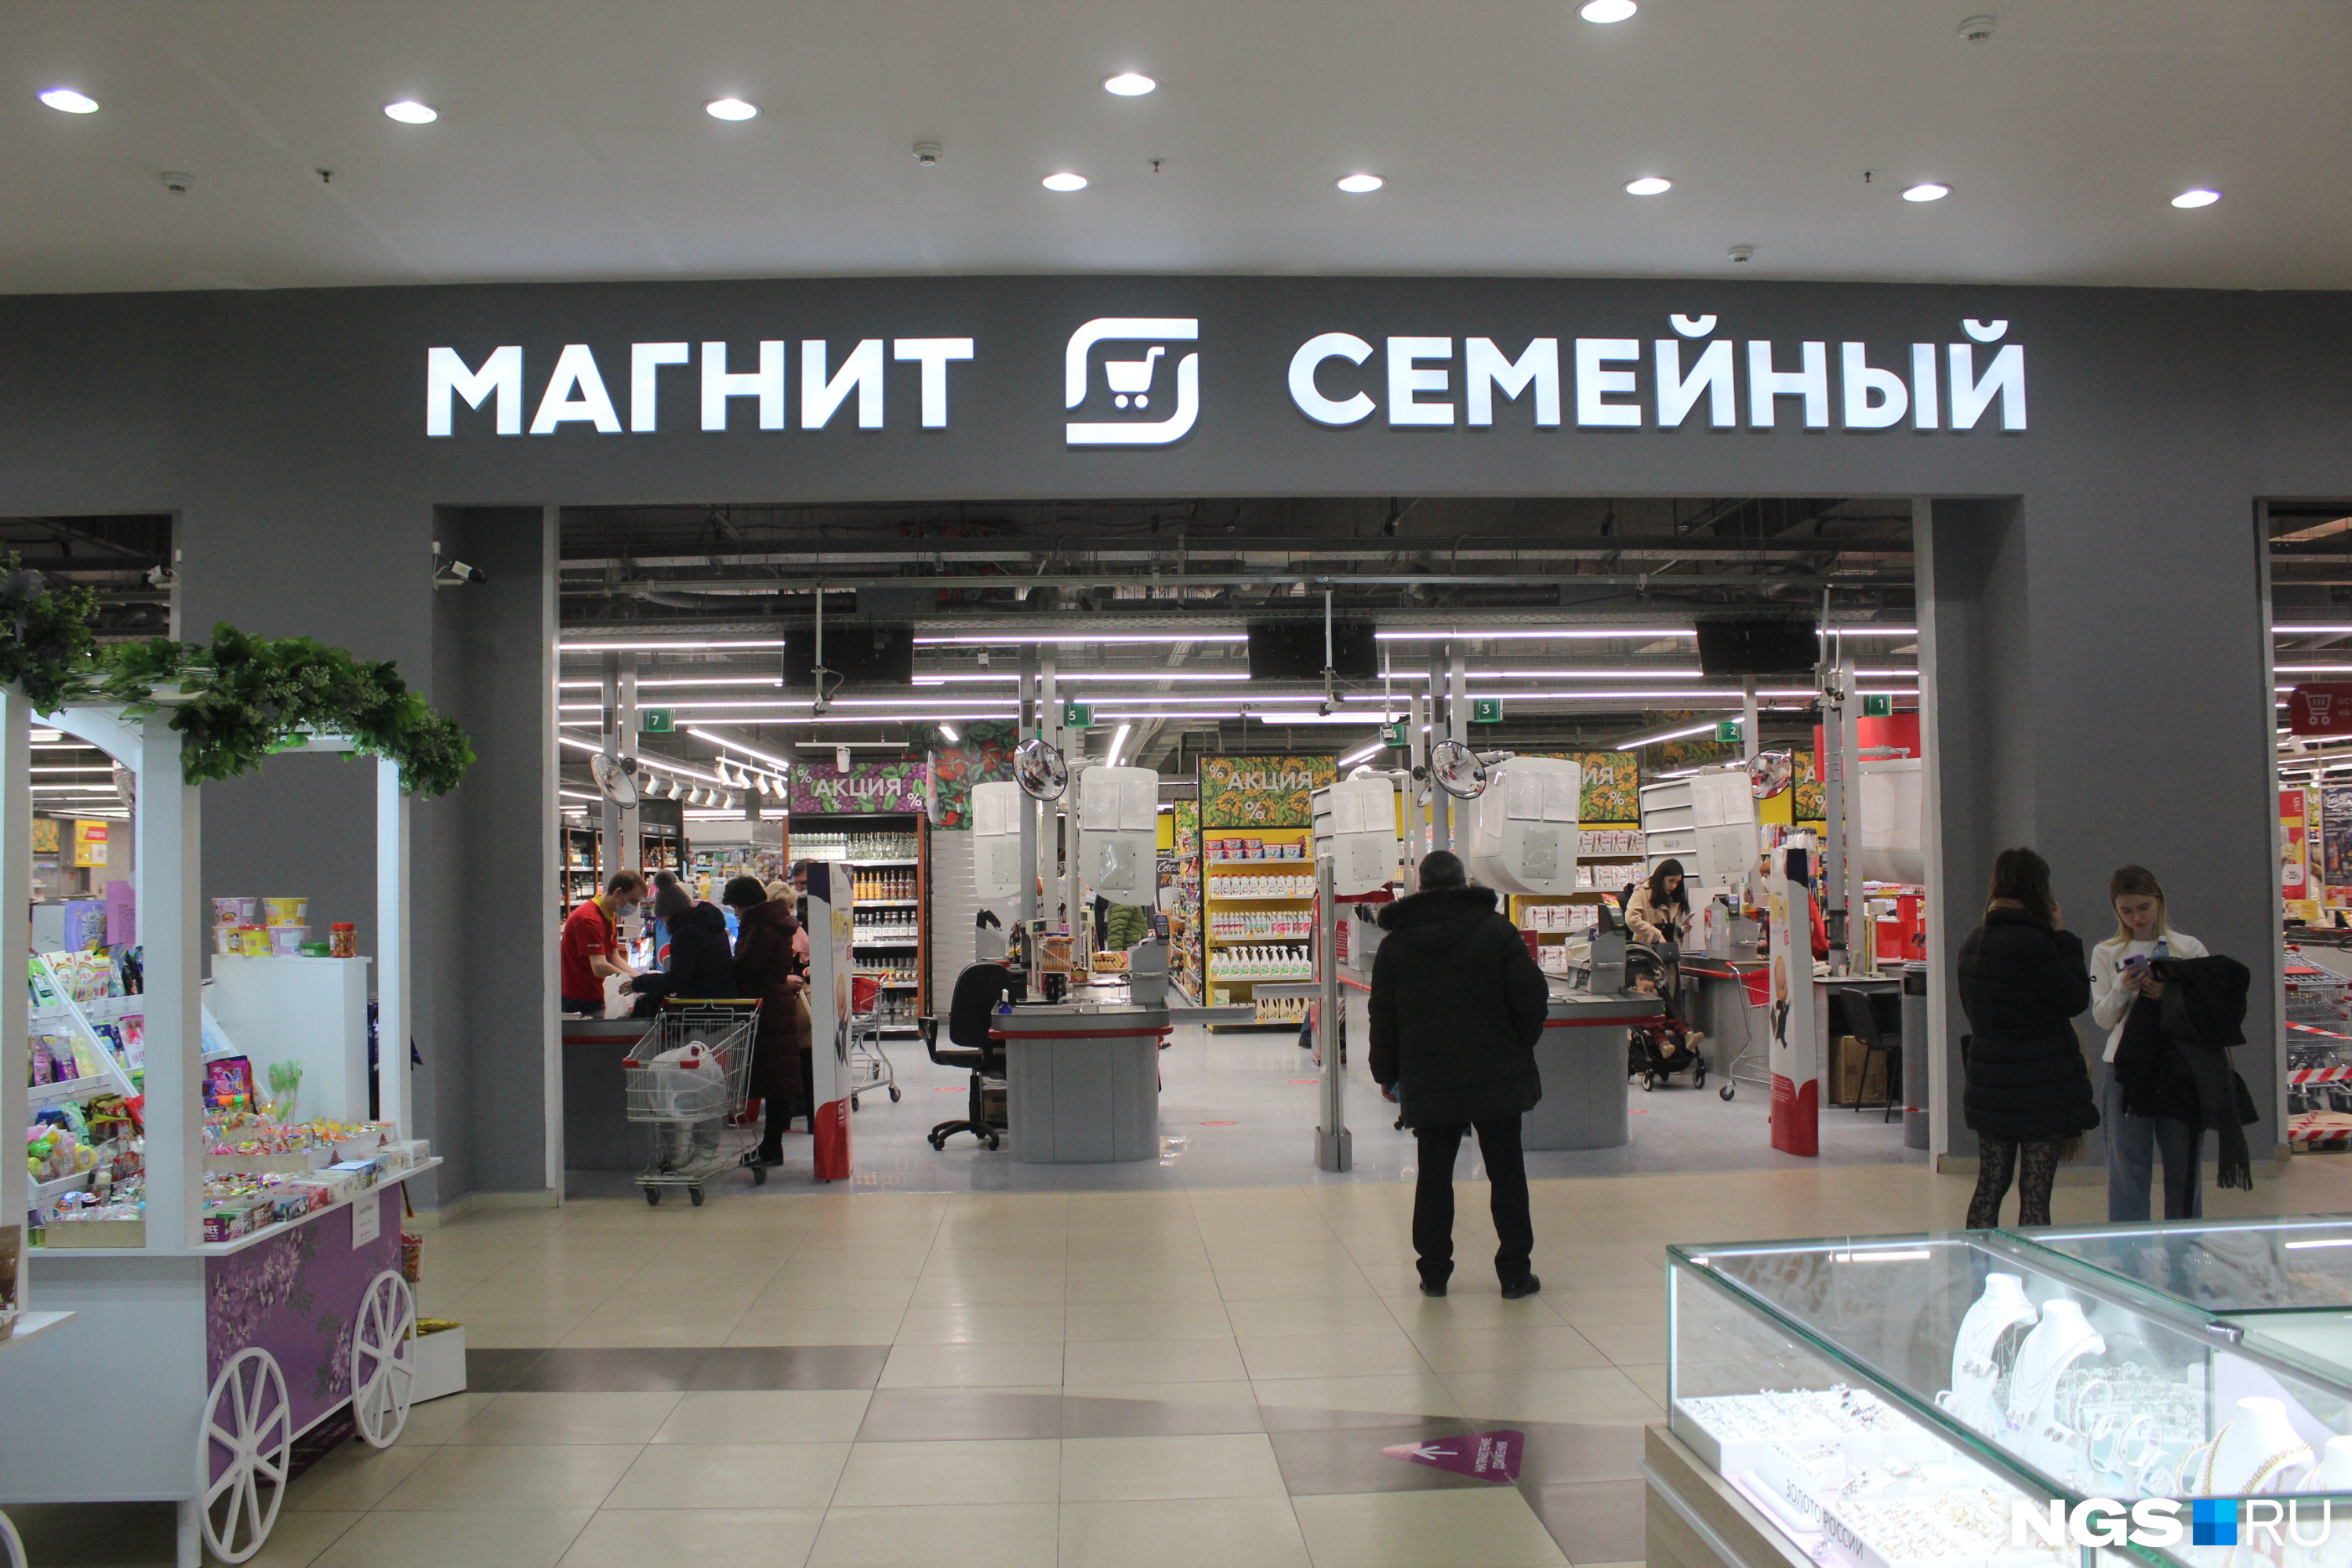 Сколько магазинов в новосибирске. Магнит в галерее. Входы в ТЦ галерея Новосиб. ТЦ галерея расположение магнитов. Сколько галерей в Новосибирске.